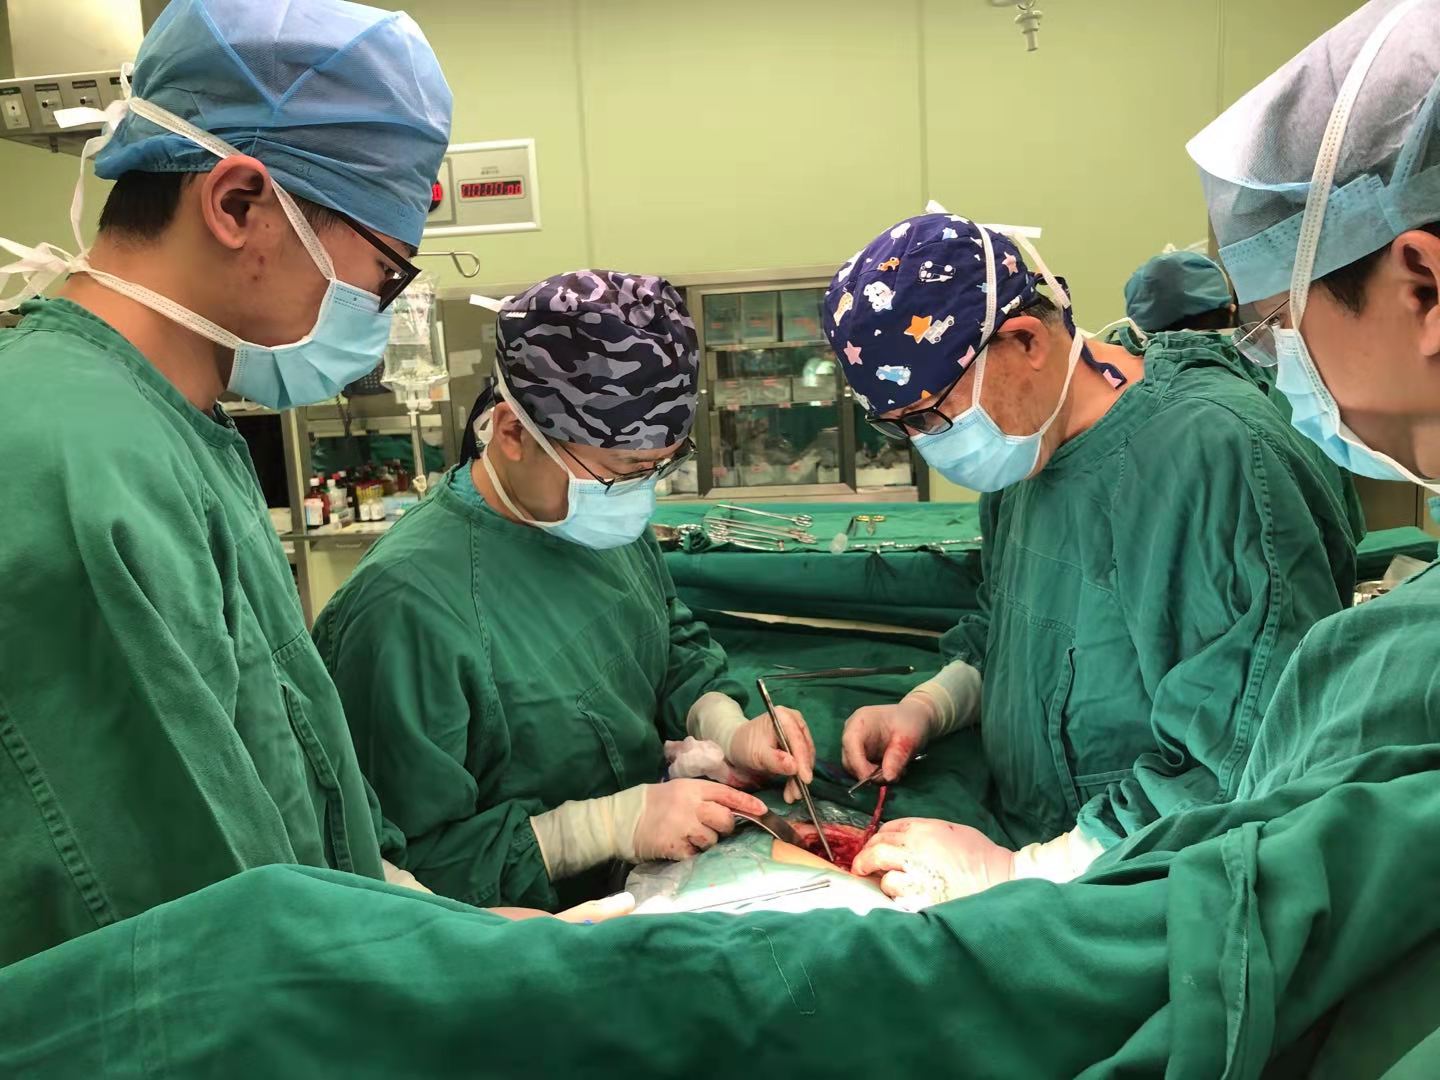 20210913-医院供图-张博伦-肾移植手术中.jpg